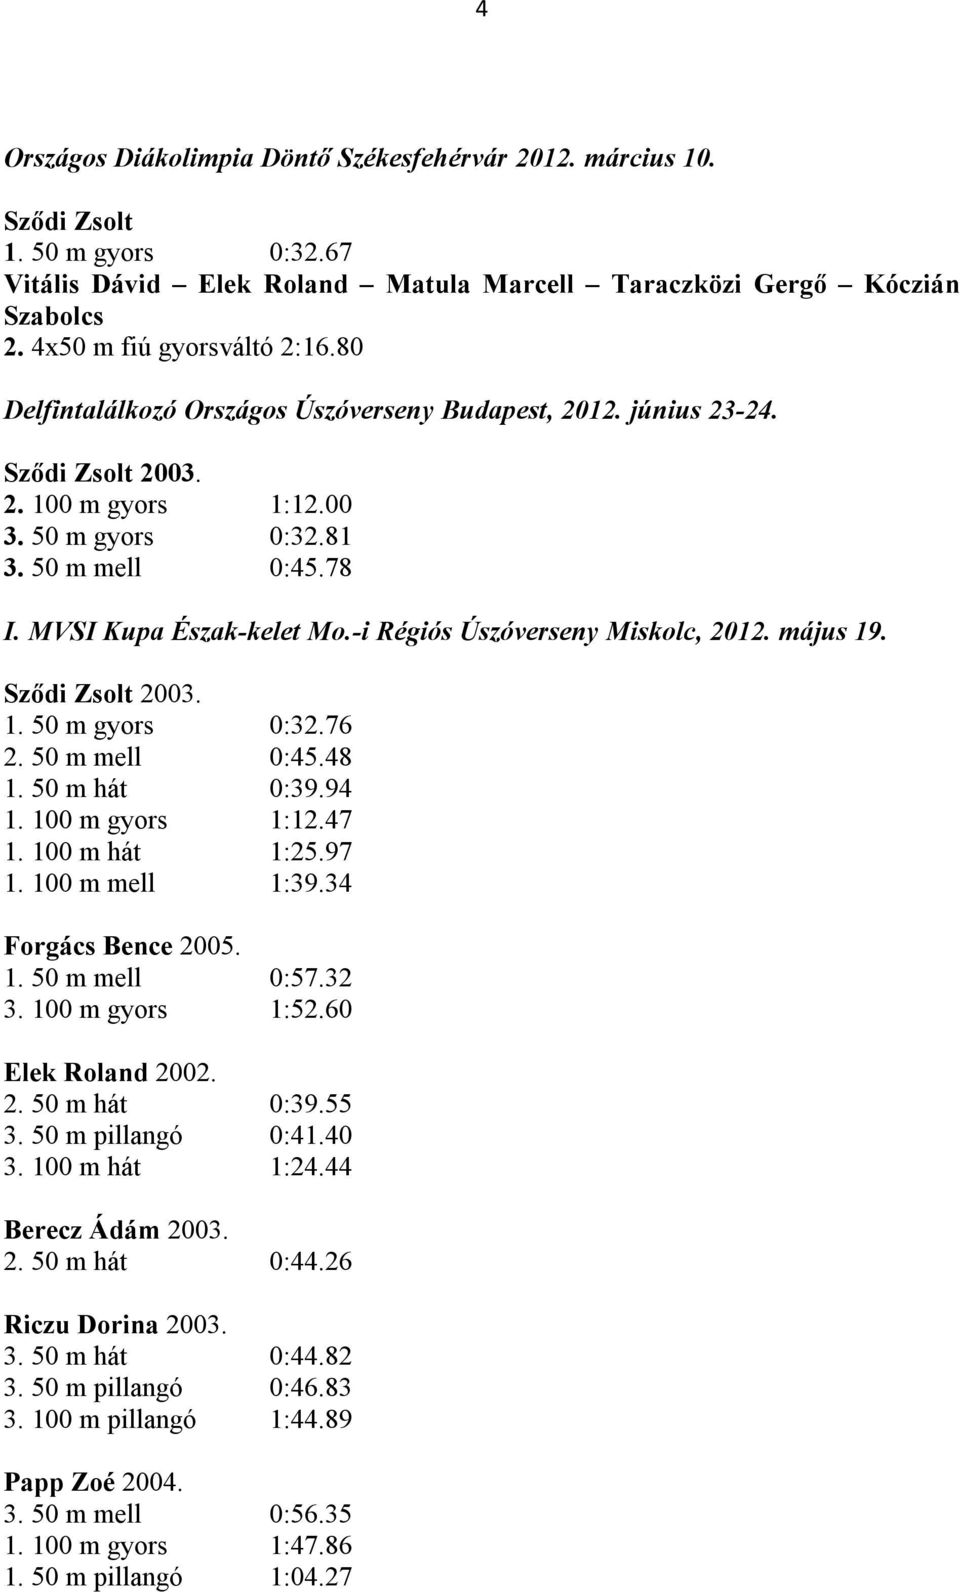 MVSI Kupa Észak-kelet Mo.-i Régiós Úszóverseny Miskolc, 2012. május 19. Sződi Zsolt 2003. 1. 50 m gyors 0:32.76 2. 50 m mell 0:45.48 1. 50 m hát 0:39.94 1. 100 m gyors 1:12.47 1. 100 m hát 1:25.97 1.